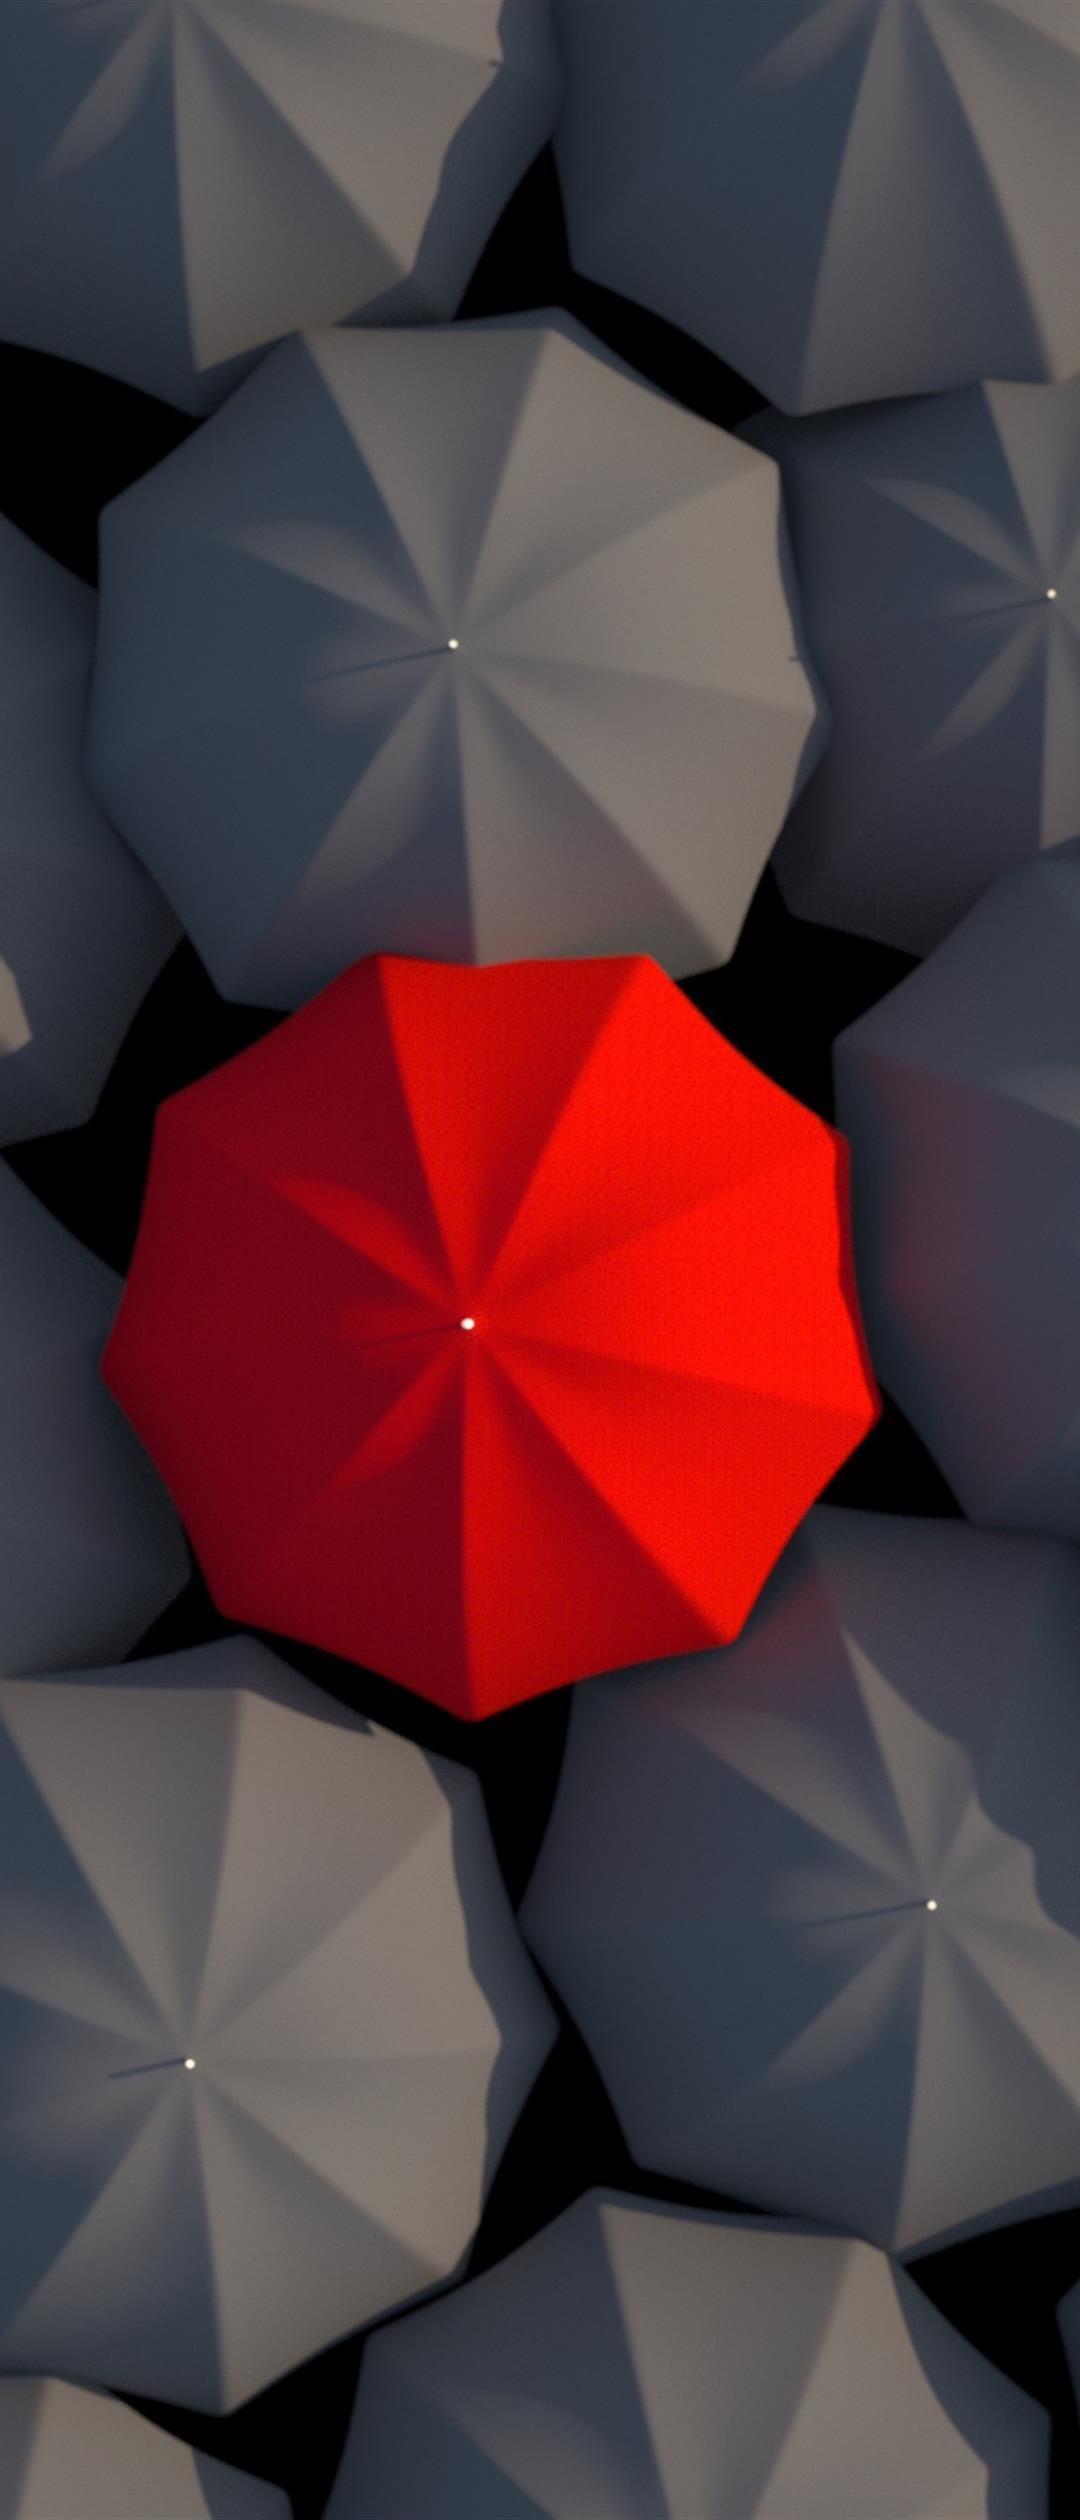 Umbrellas 3D Red Gray xperia z5 Wallpaper Download